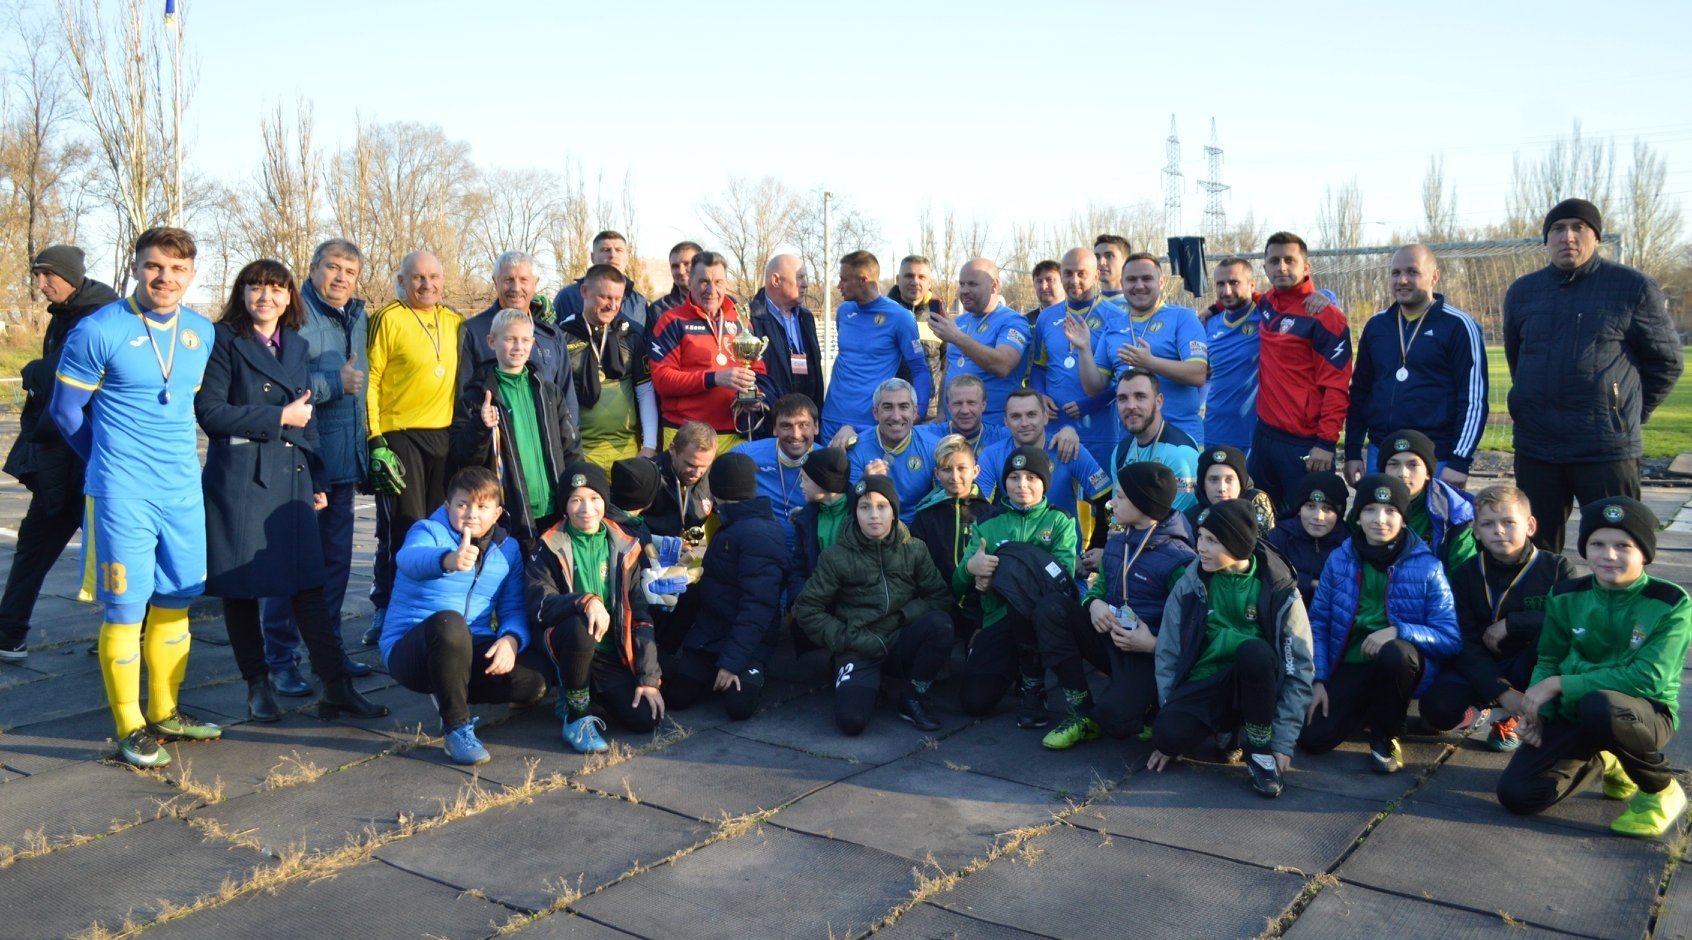 Праздник футбола в Запорожье: Шевчук вернулся, чтобы забить 